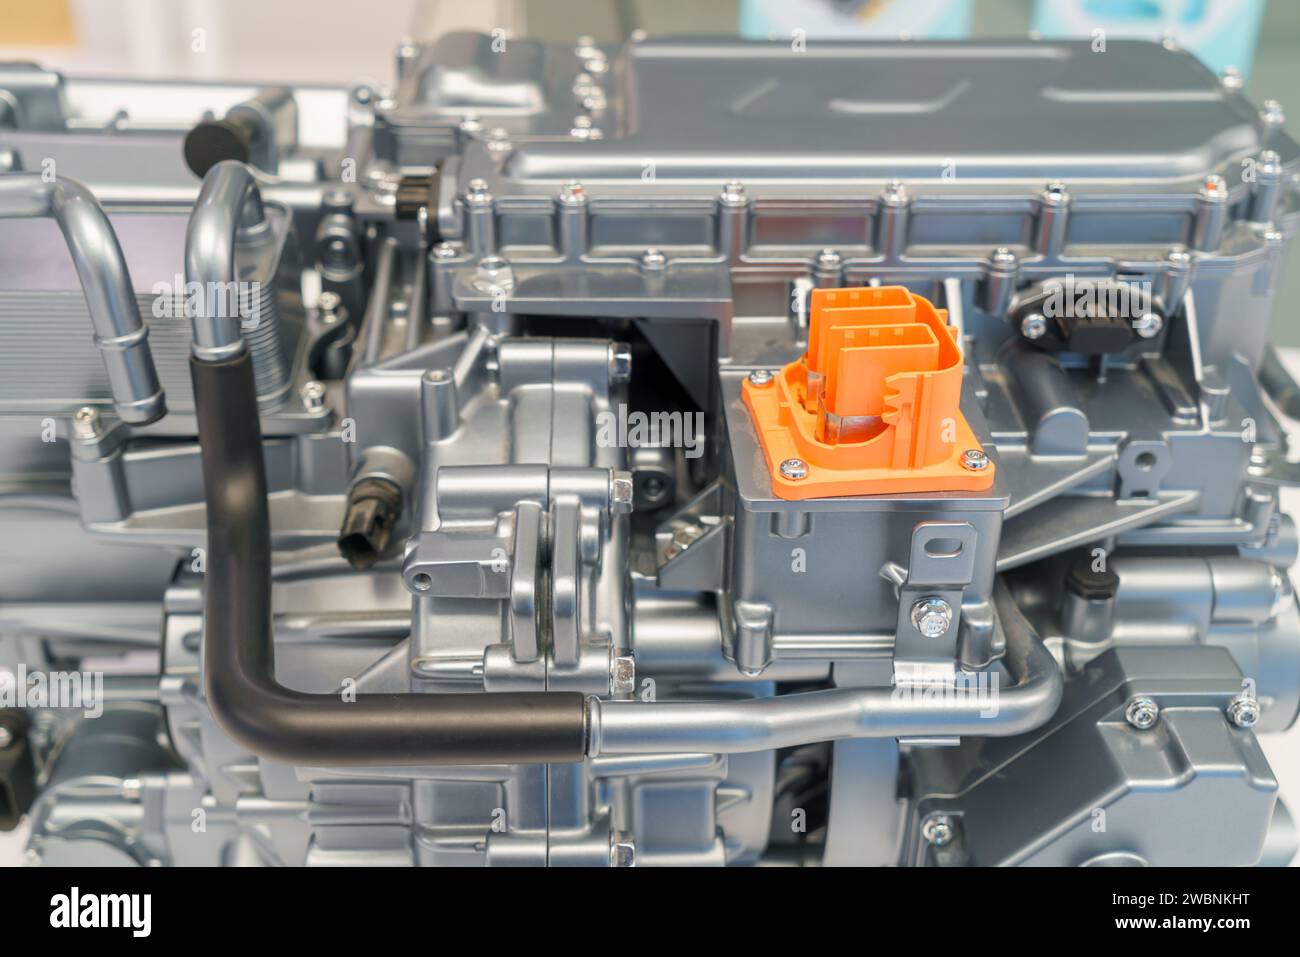 Leistungsstarker Motor unter der Motorhaube eines Elektrofahrzeugs (EV). Dieser Blick zeigt die fortschrittliche Technologie, die die umweltfreundliche Revolution vorangetrieben hat. Stockfoto